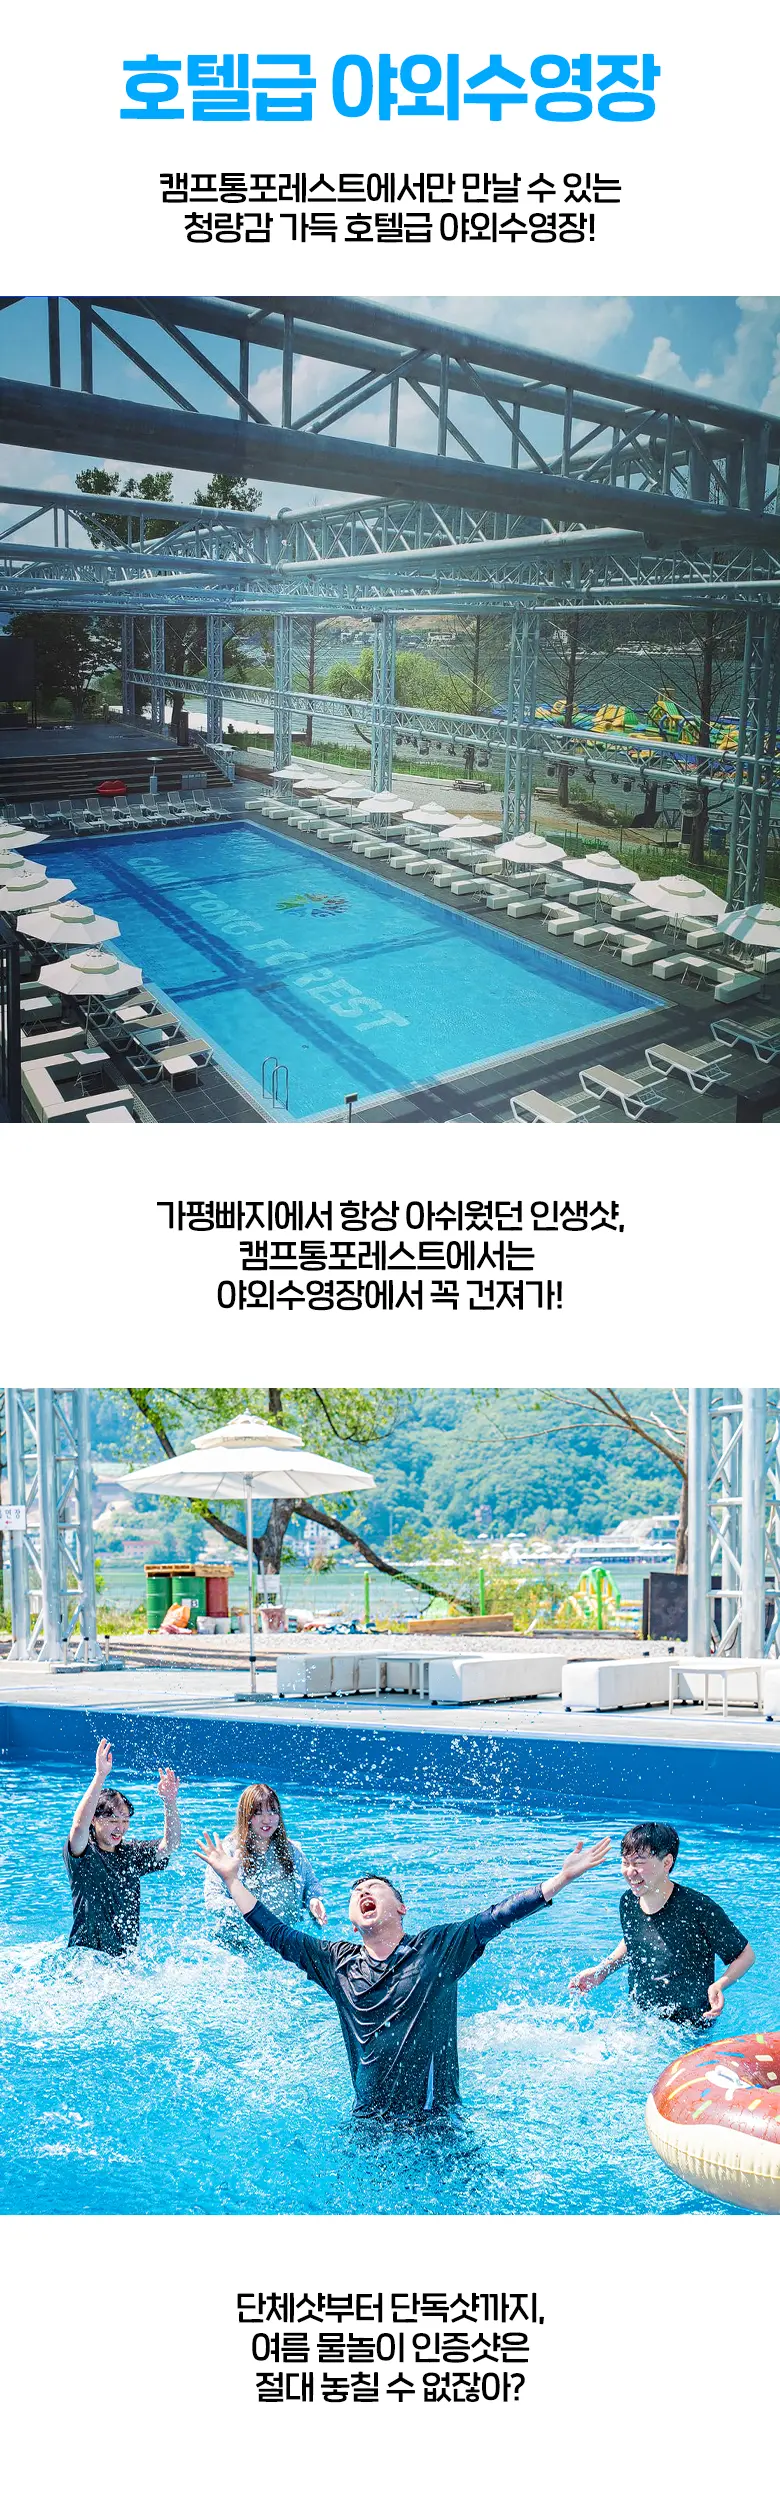 인생단체샷 단독샷이 가능한 호텔급 야외 수영장